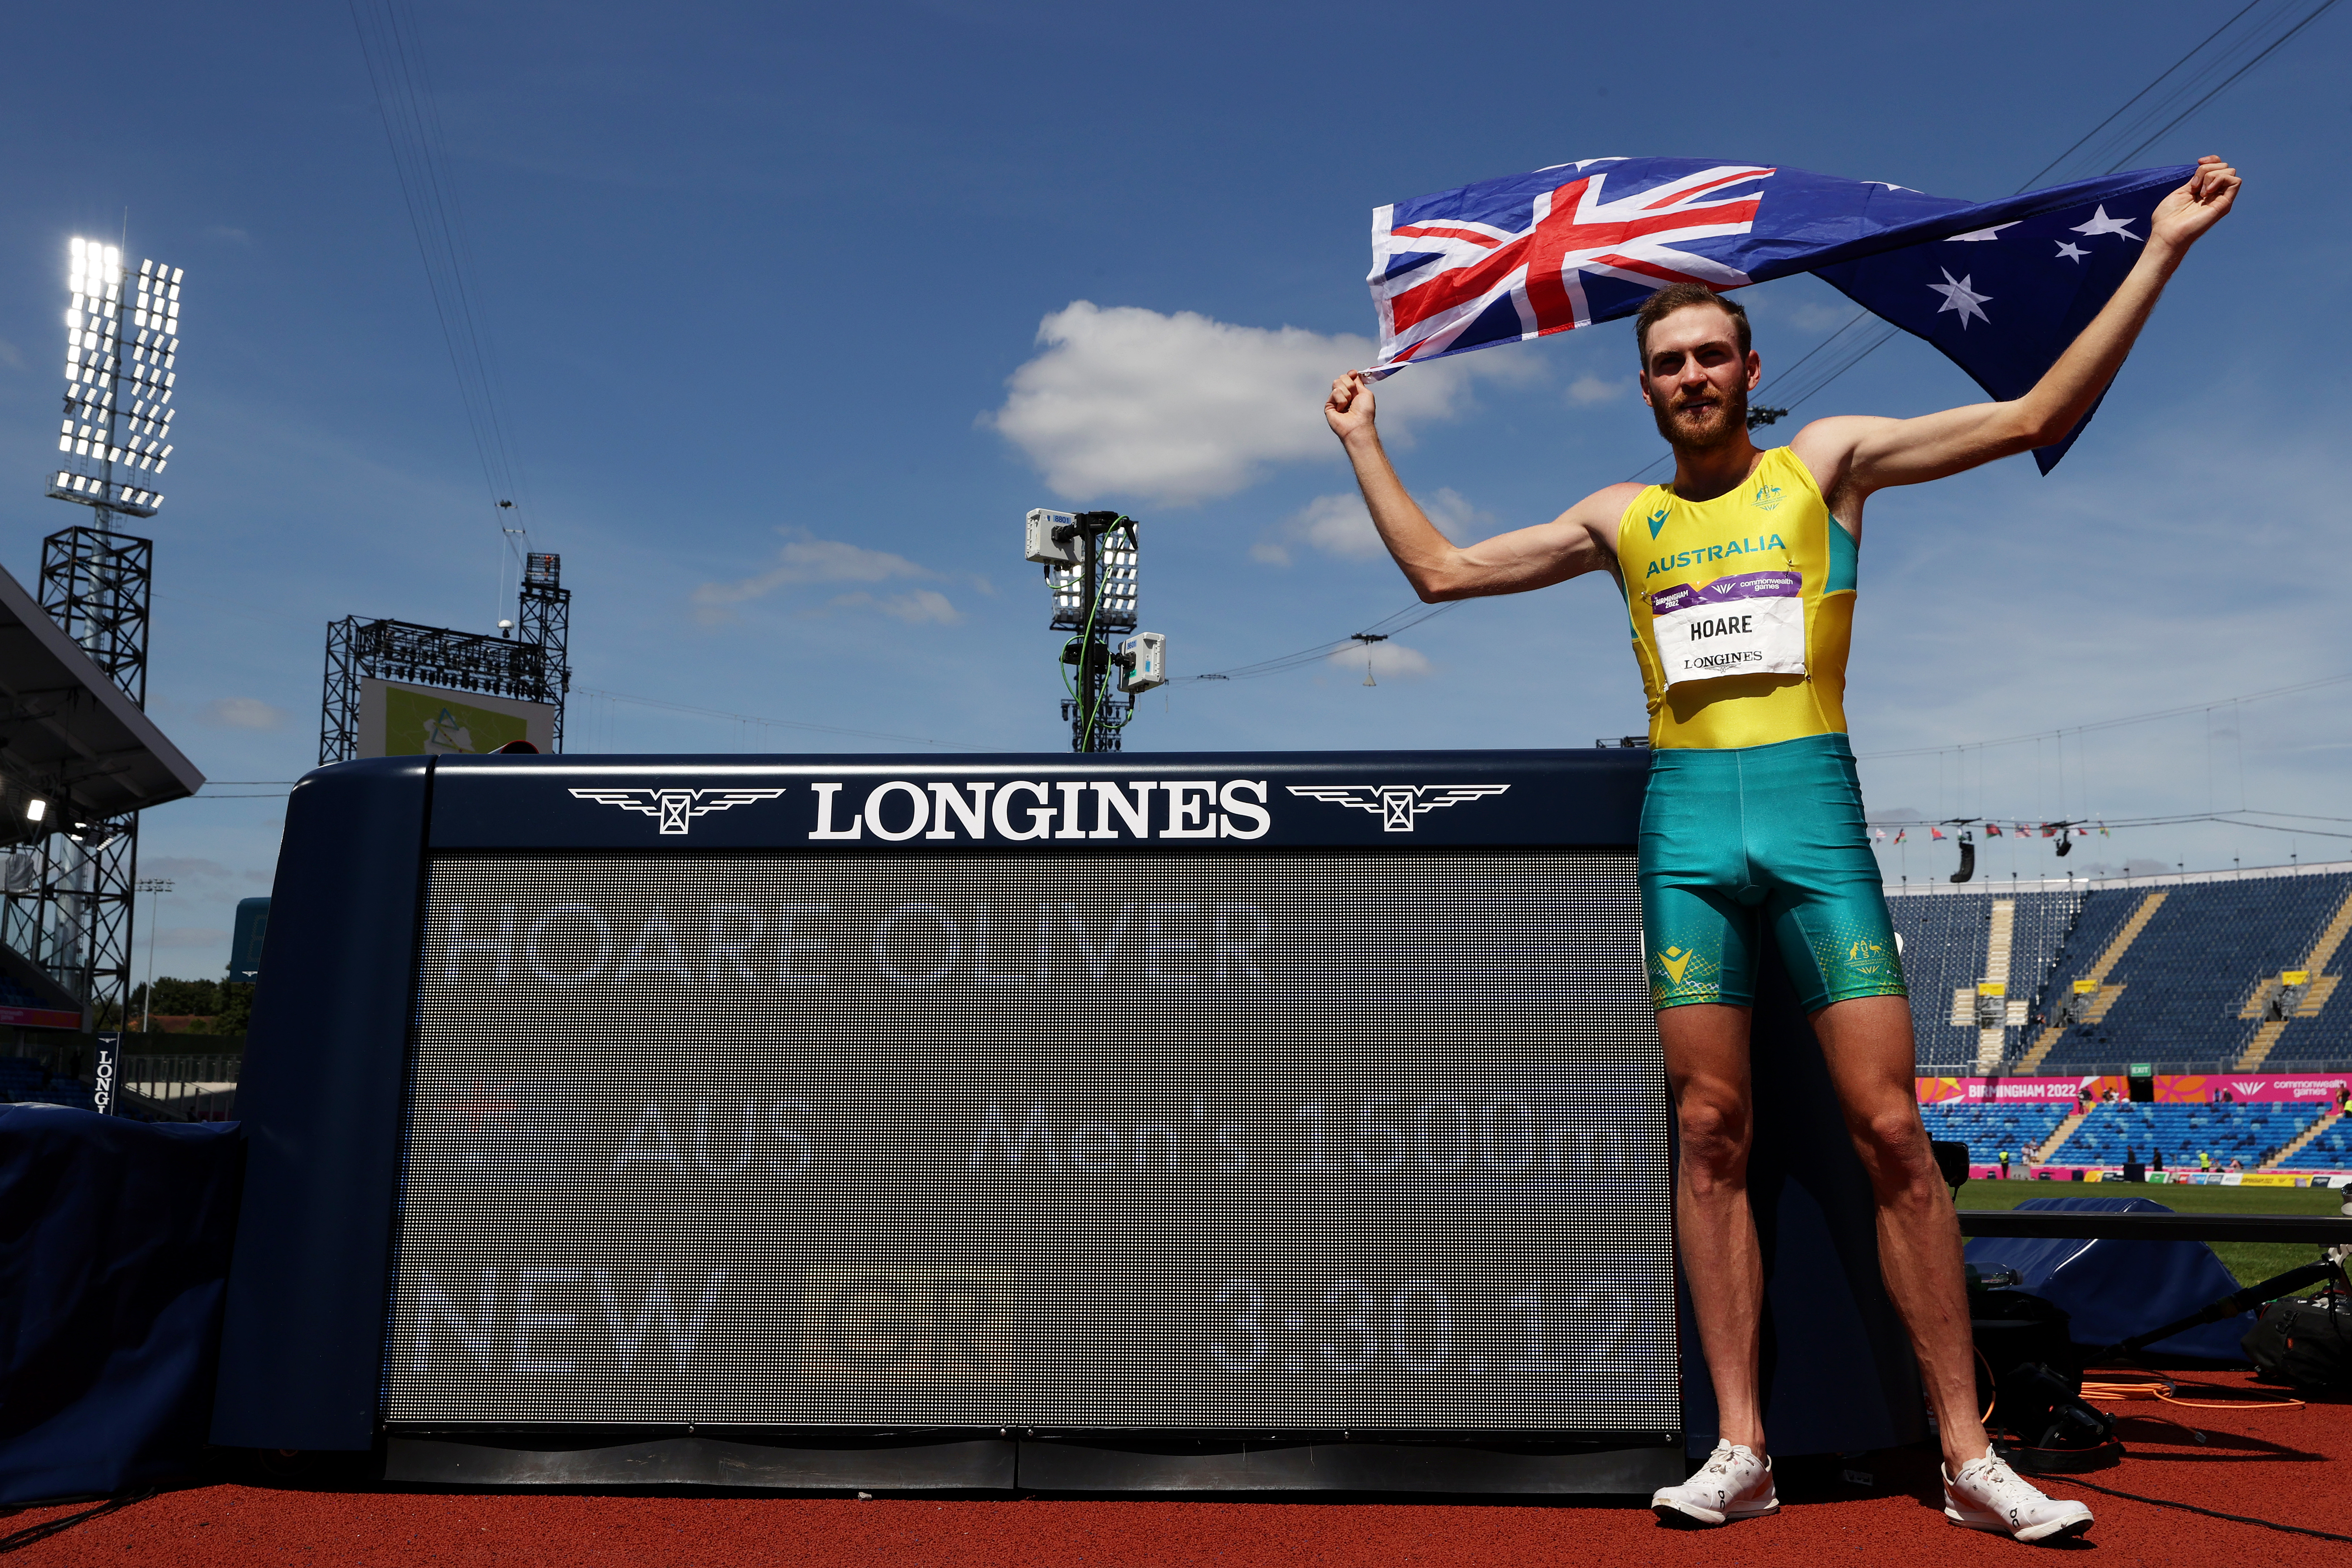 Oliver Hoare, 1500m or, course, résultats, vainqueur, Australien, interview